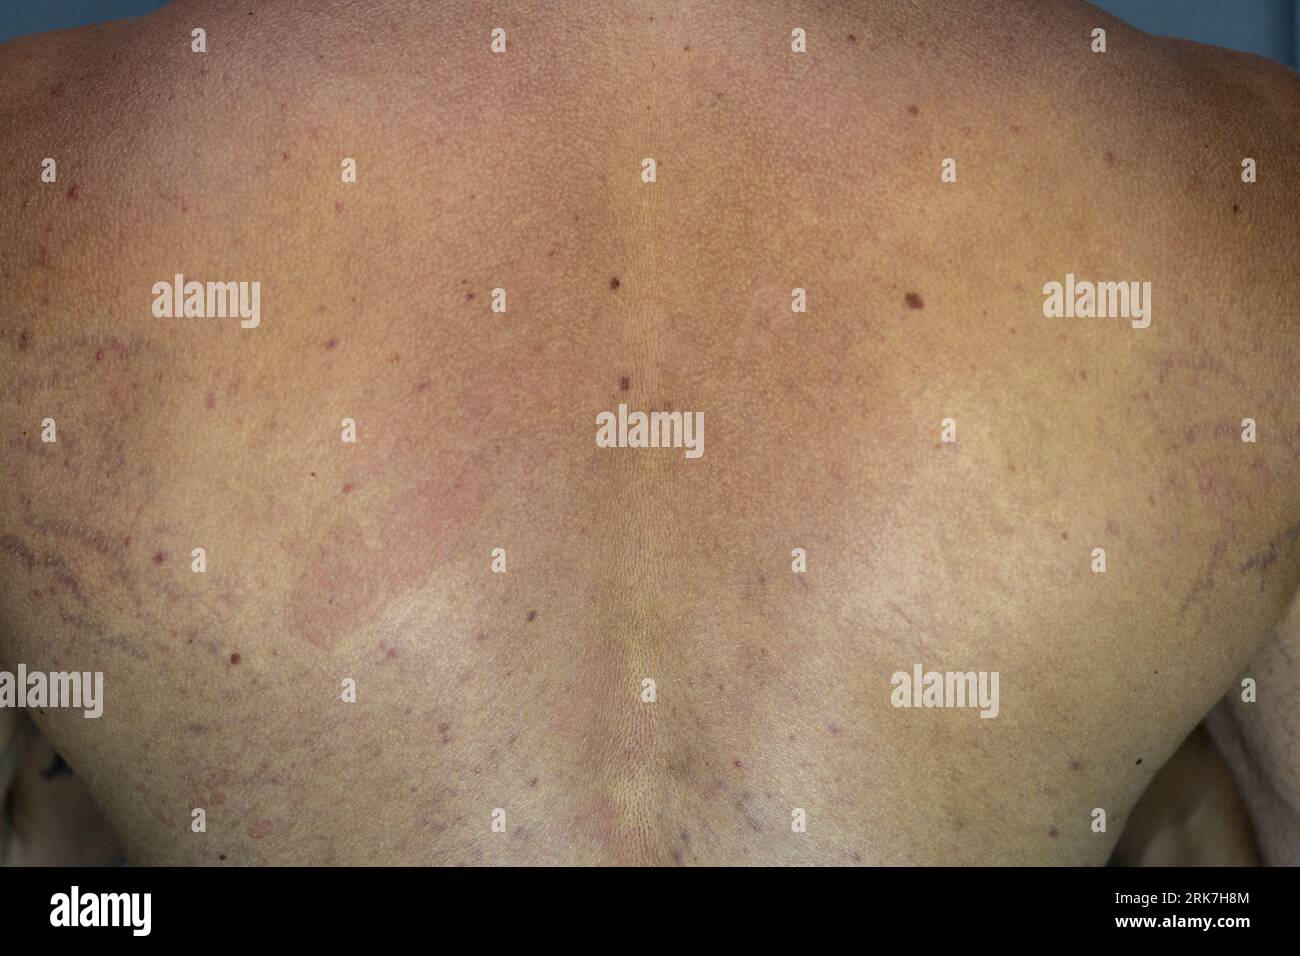 Ein Mann, der an der Hautkrankheit Tinea versicolor mit verfärbten Flecken auf der Haut leidet Stockfoto